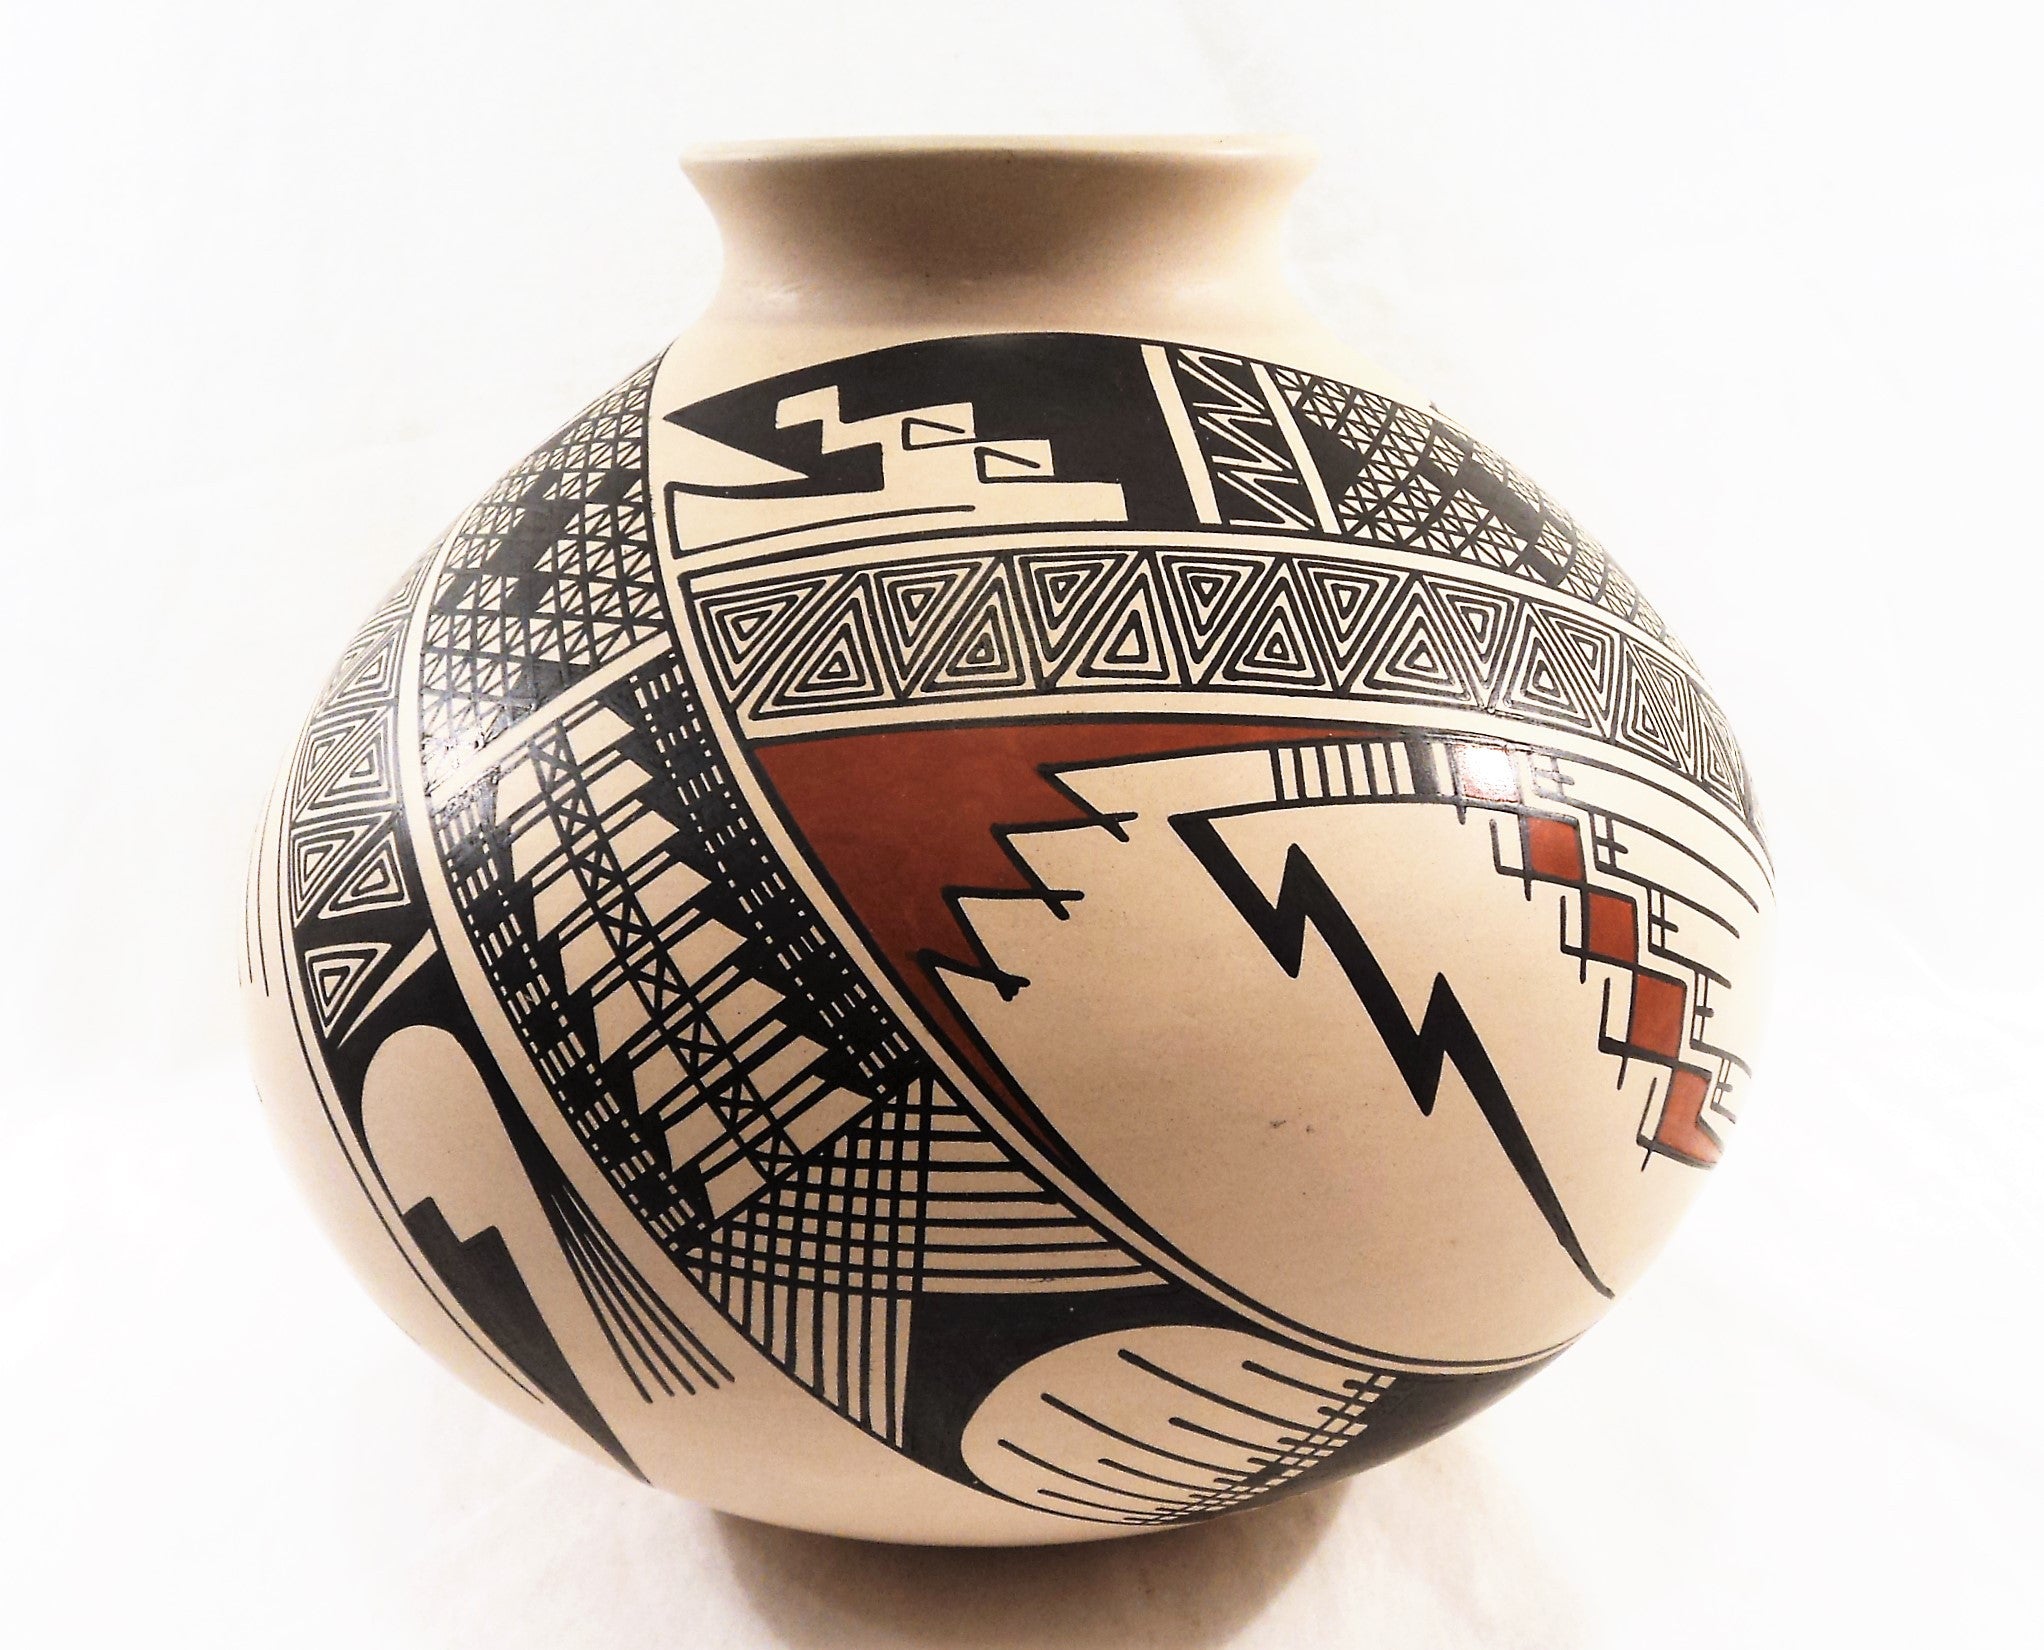 Mata Ortiz Pottery by Alvano Quezada